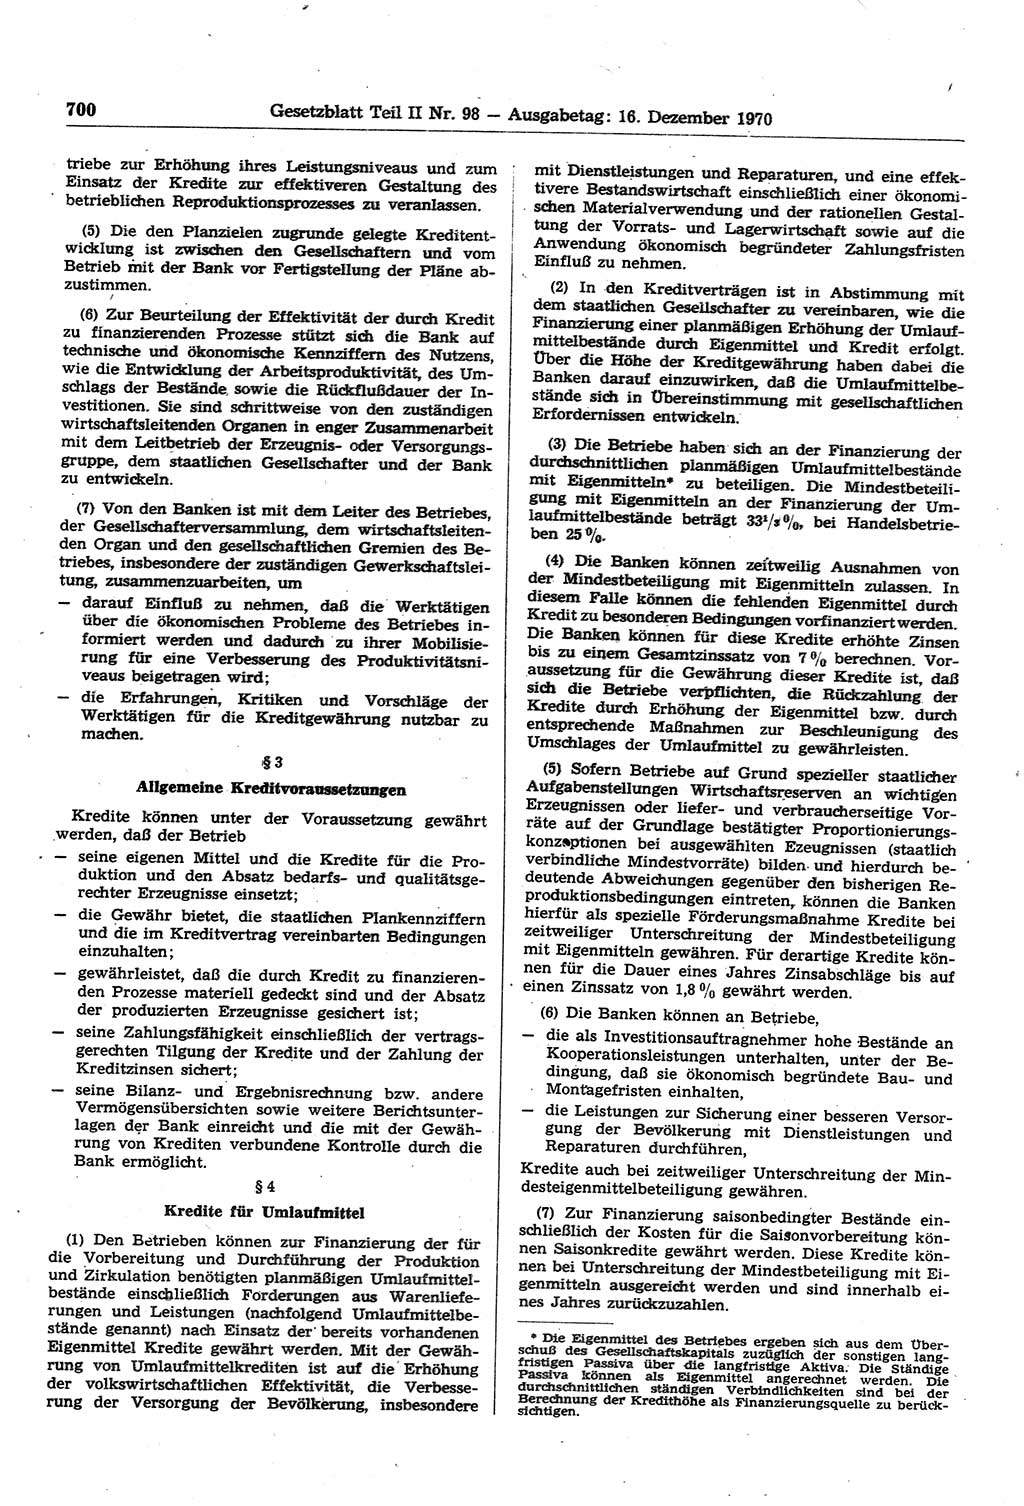 Gesetzblatt (GBl.) der Deutschen Demokratischen Republik (DDR) Teil ⅠⅠ 1970, Seite 700 (GBl. DDR ⅠⅠ 1970, S. 700)